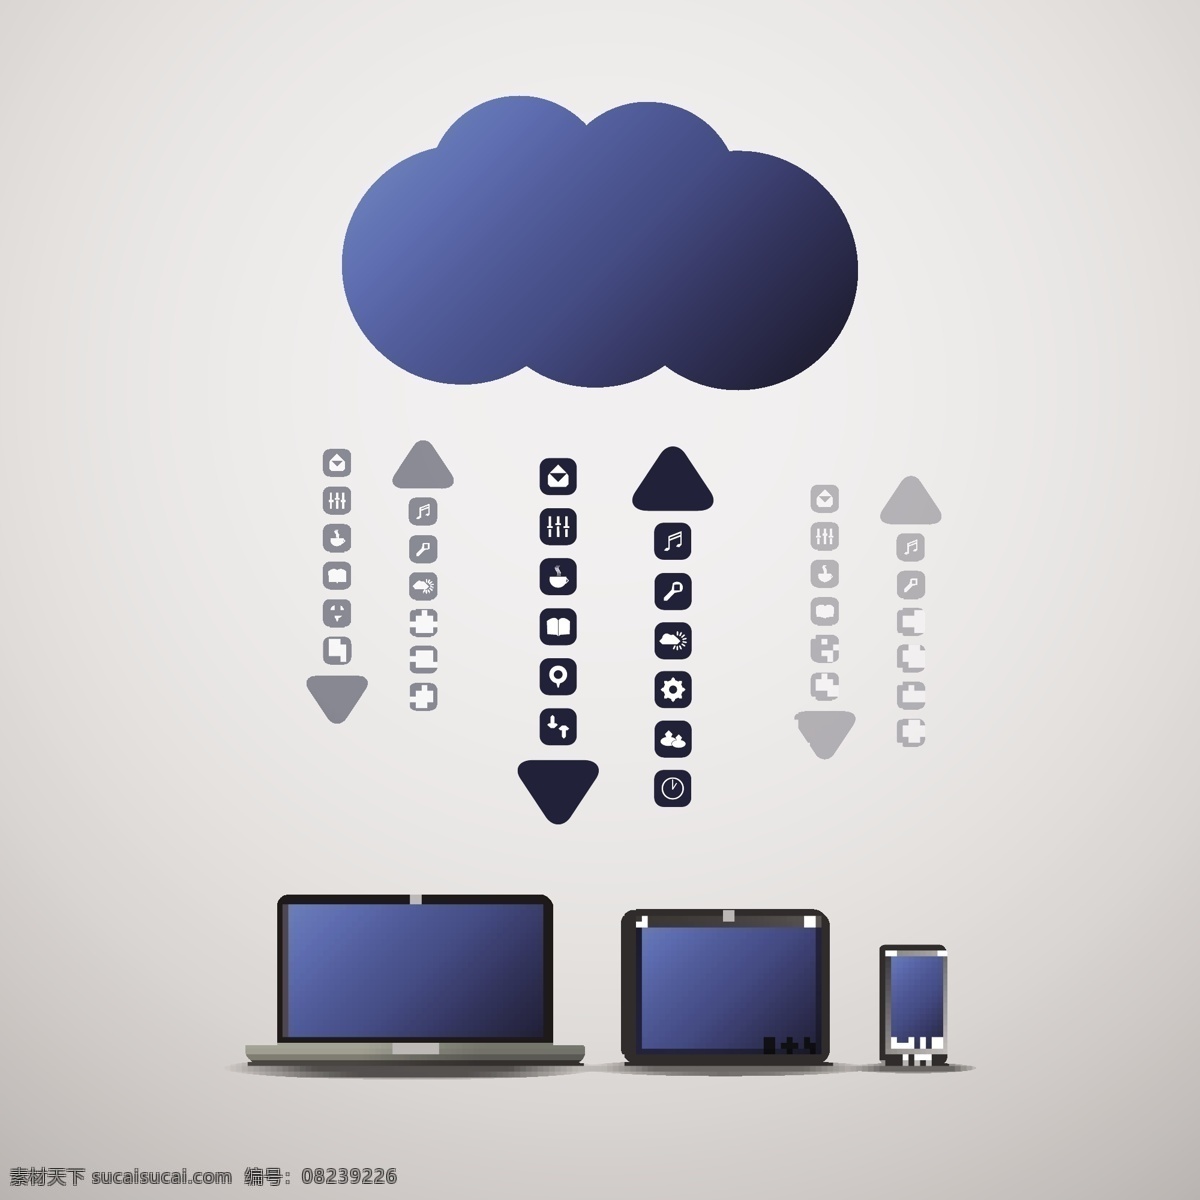 云朵与箭头 云计算图标 笔记本电脑 智能手机 云系统图标 云服务 网络信息科技 云朵图标 生活百科 矢量素材 白色